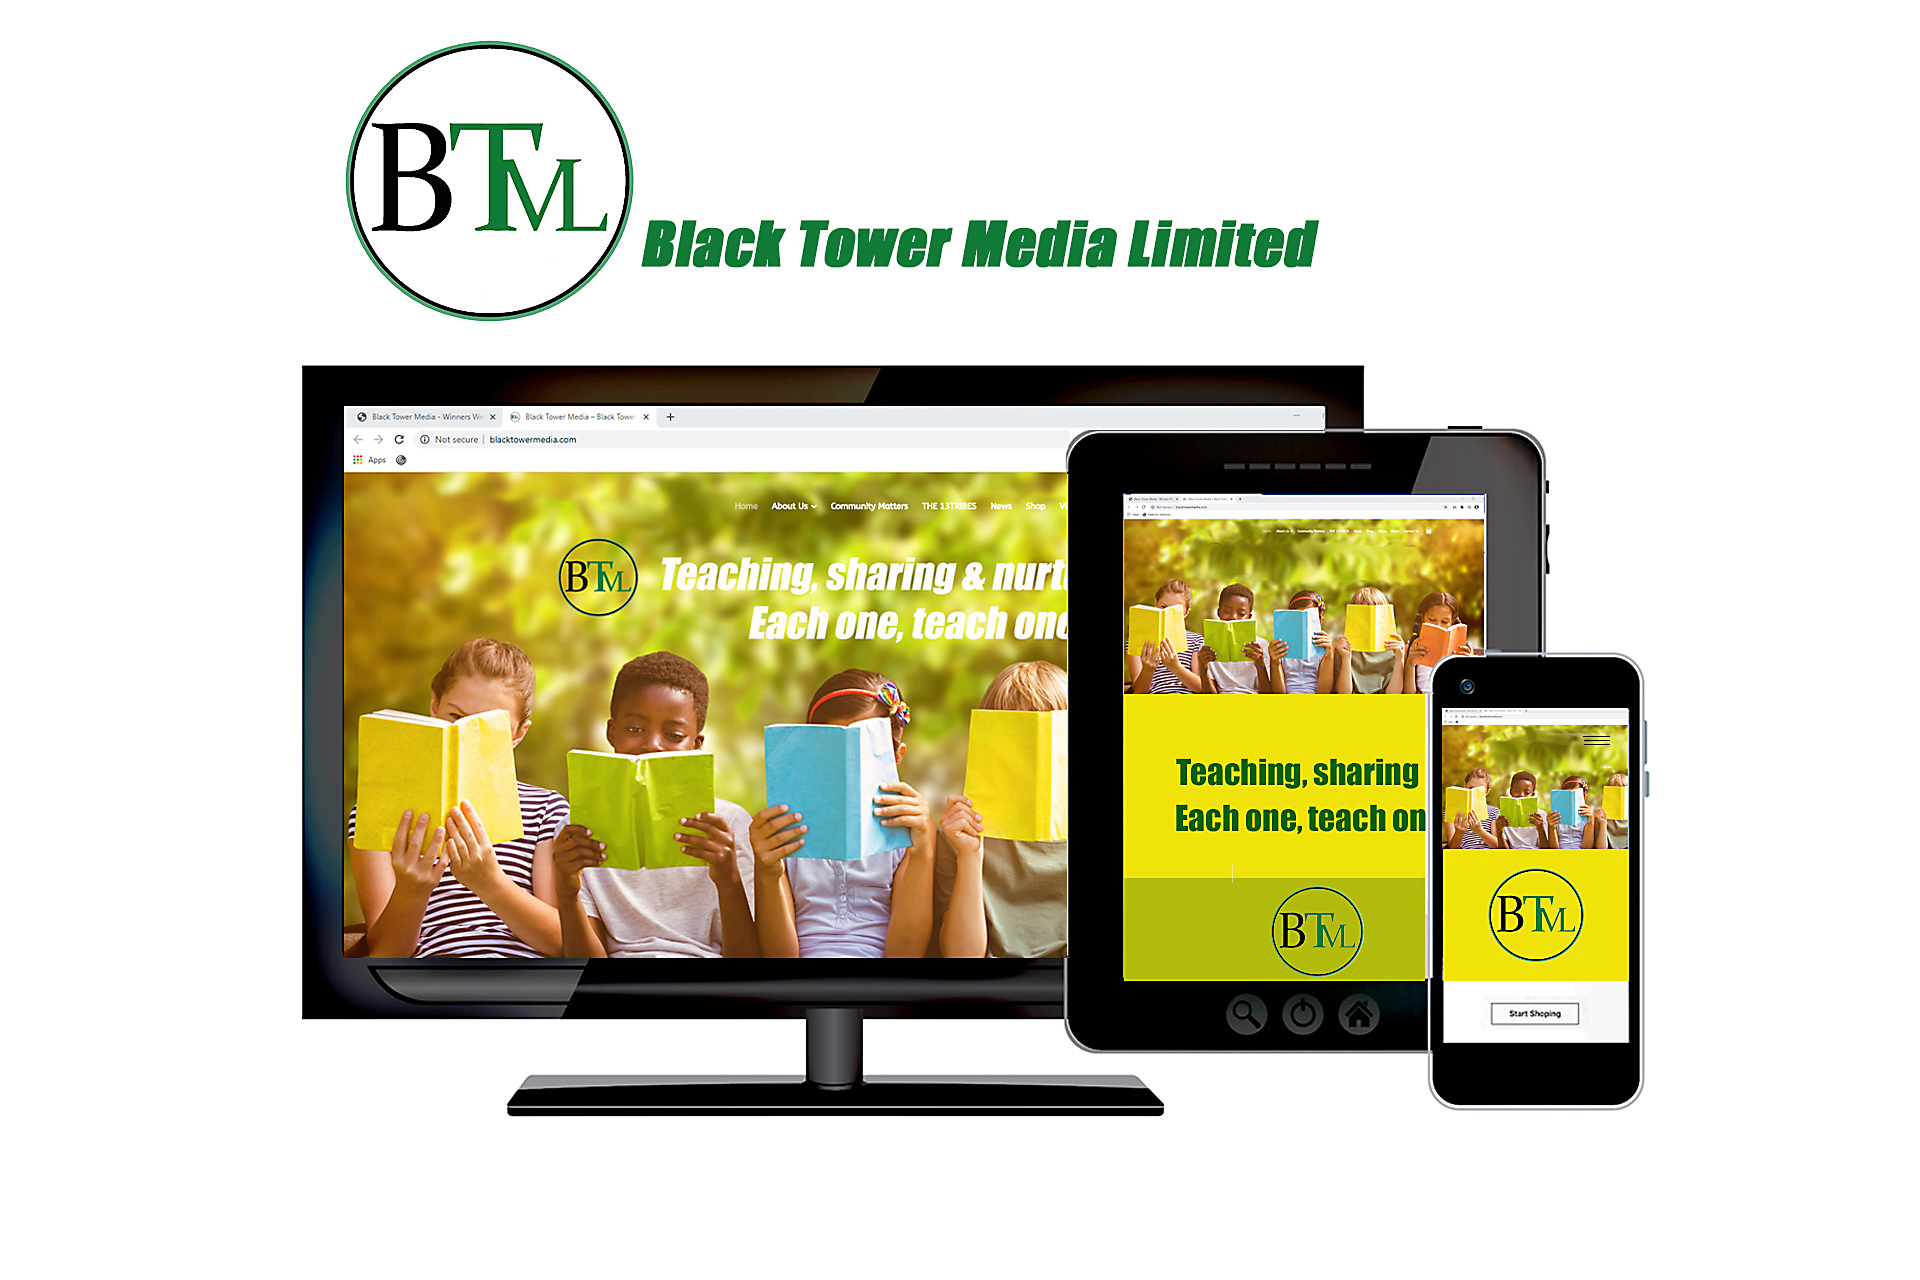 //winnerswebdesign.com/wp-content/uploads/2020/08/Black-Tower-Media-1.jpg